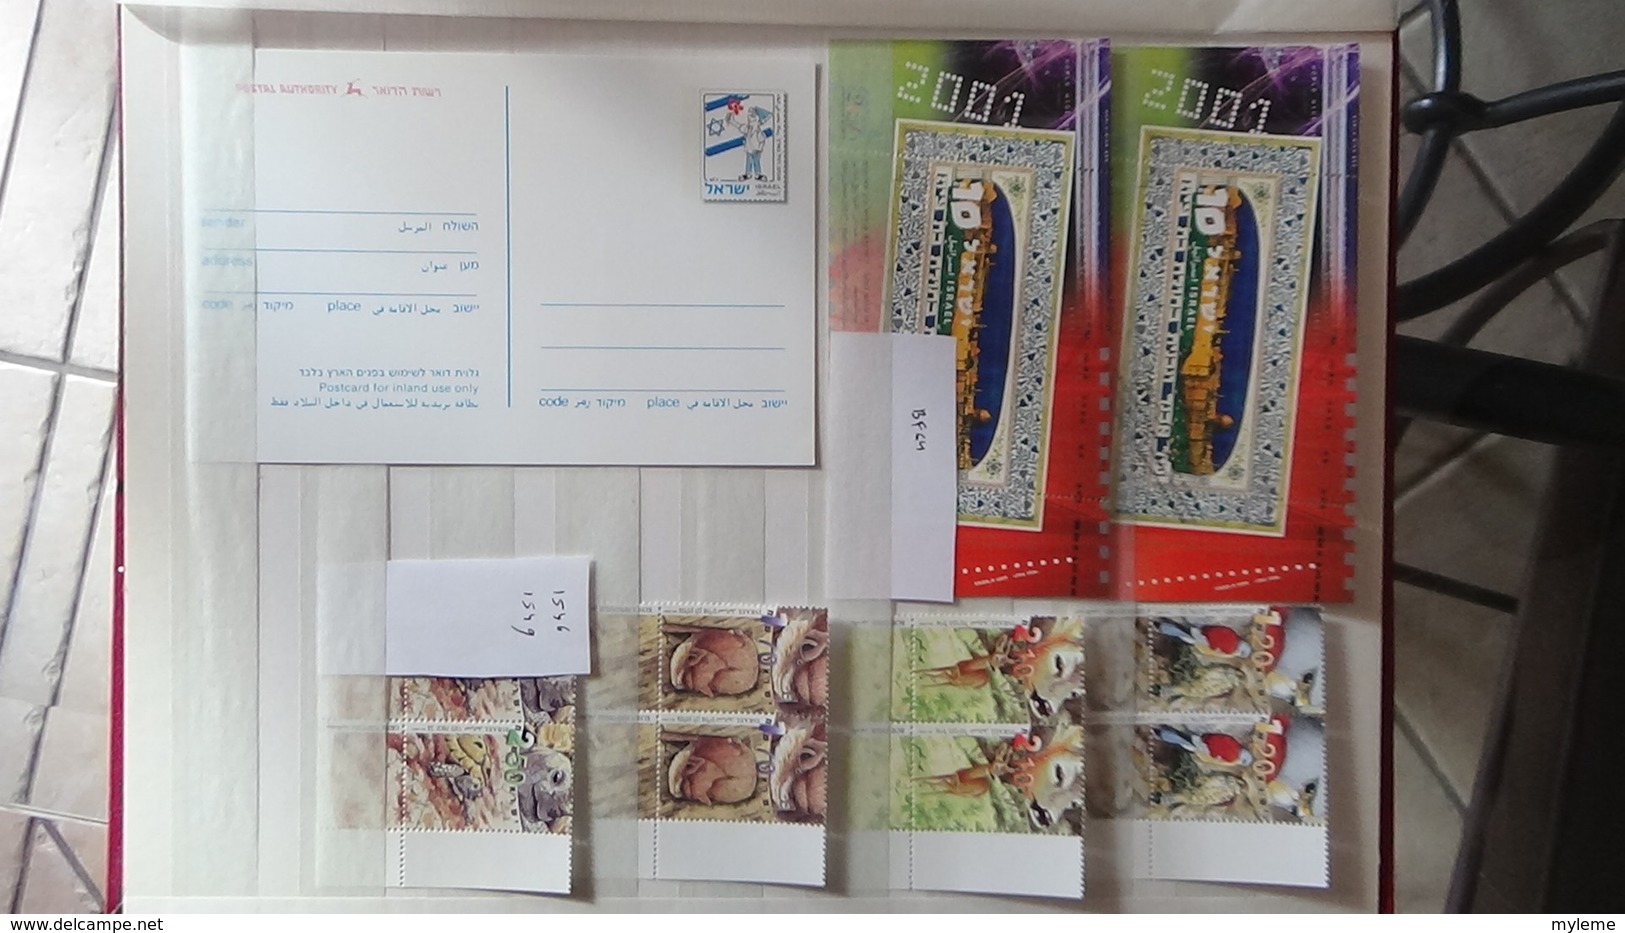 Collection de timbres, blocs, carnets et bandes tous ** d'Israël. Faciale et côté sympas !!!